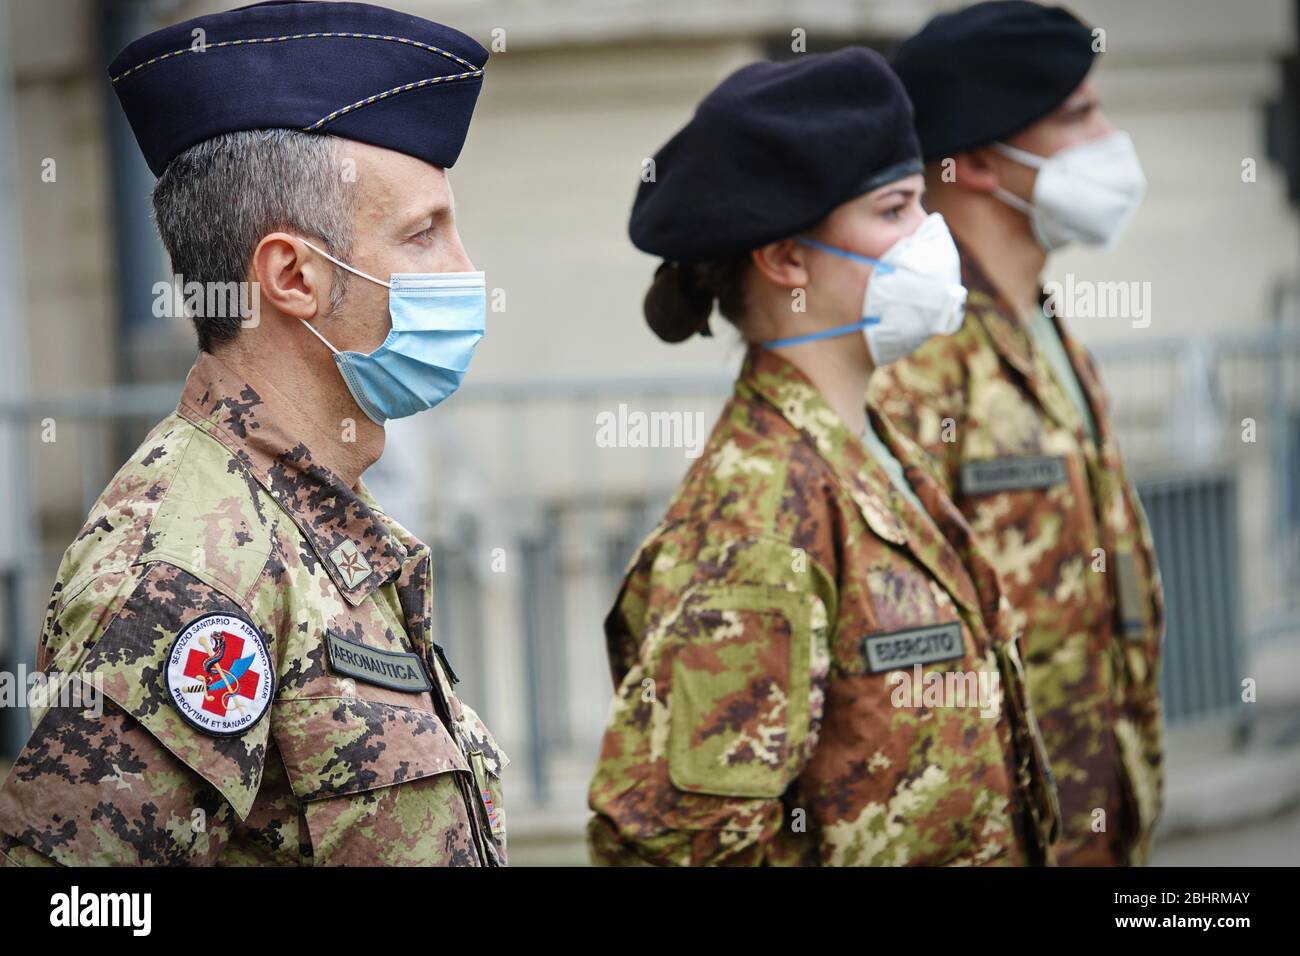 De nouvelles infirmières militaires seront employées dans les maisons de soins pour aider le système de santé régional à faire face à l'urgence du coronavirus. Turin, Italie - avril 2020 Banque D'Images